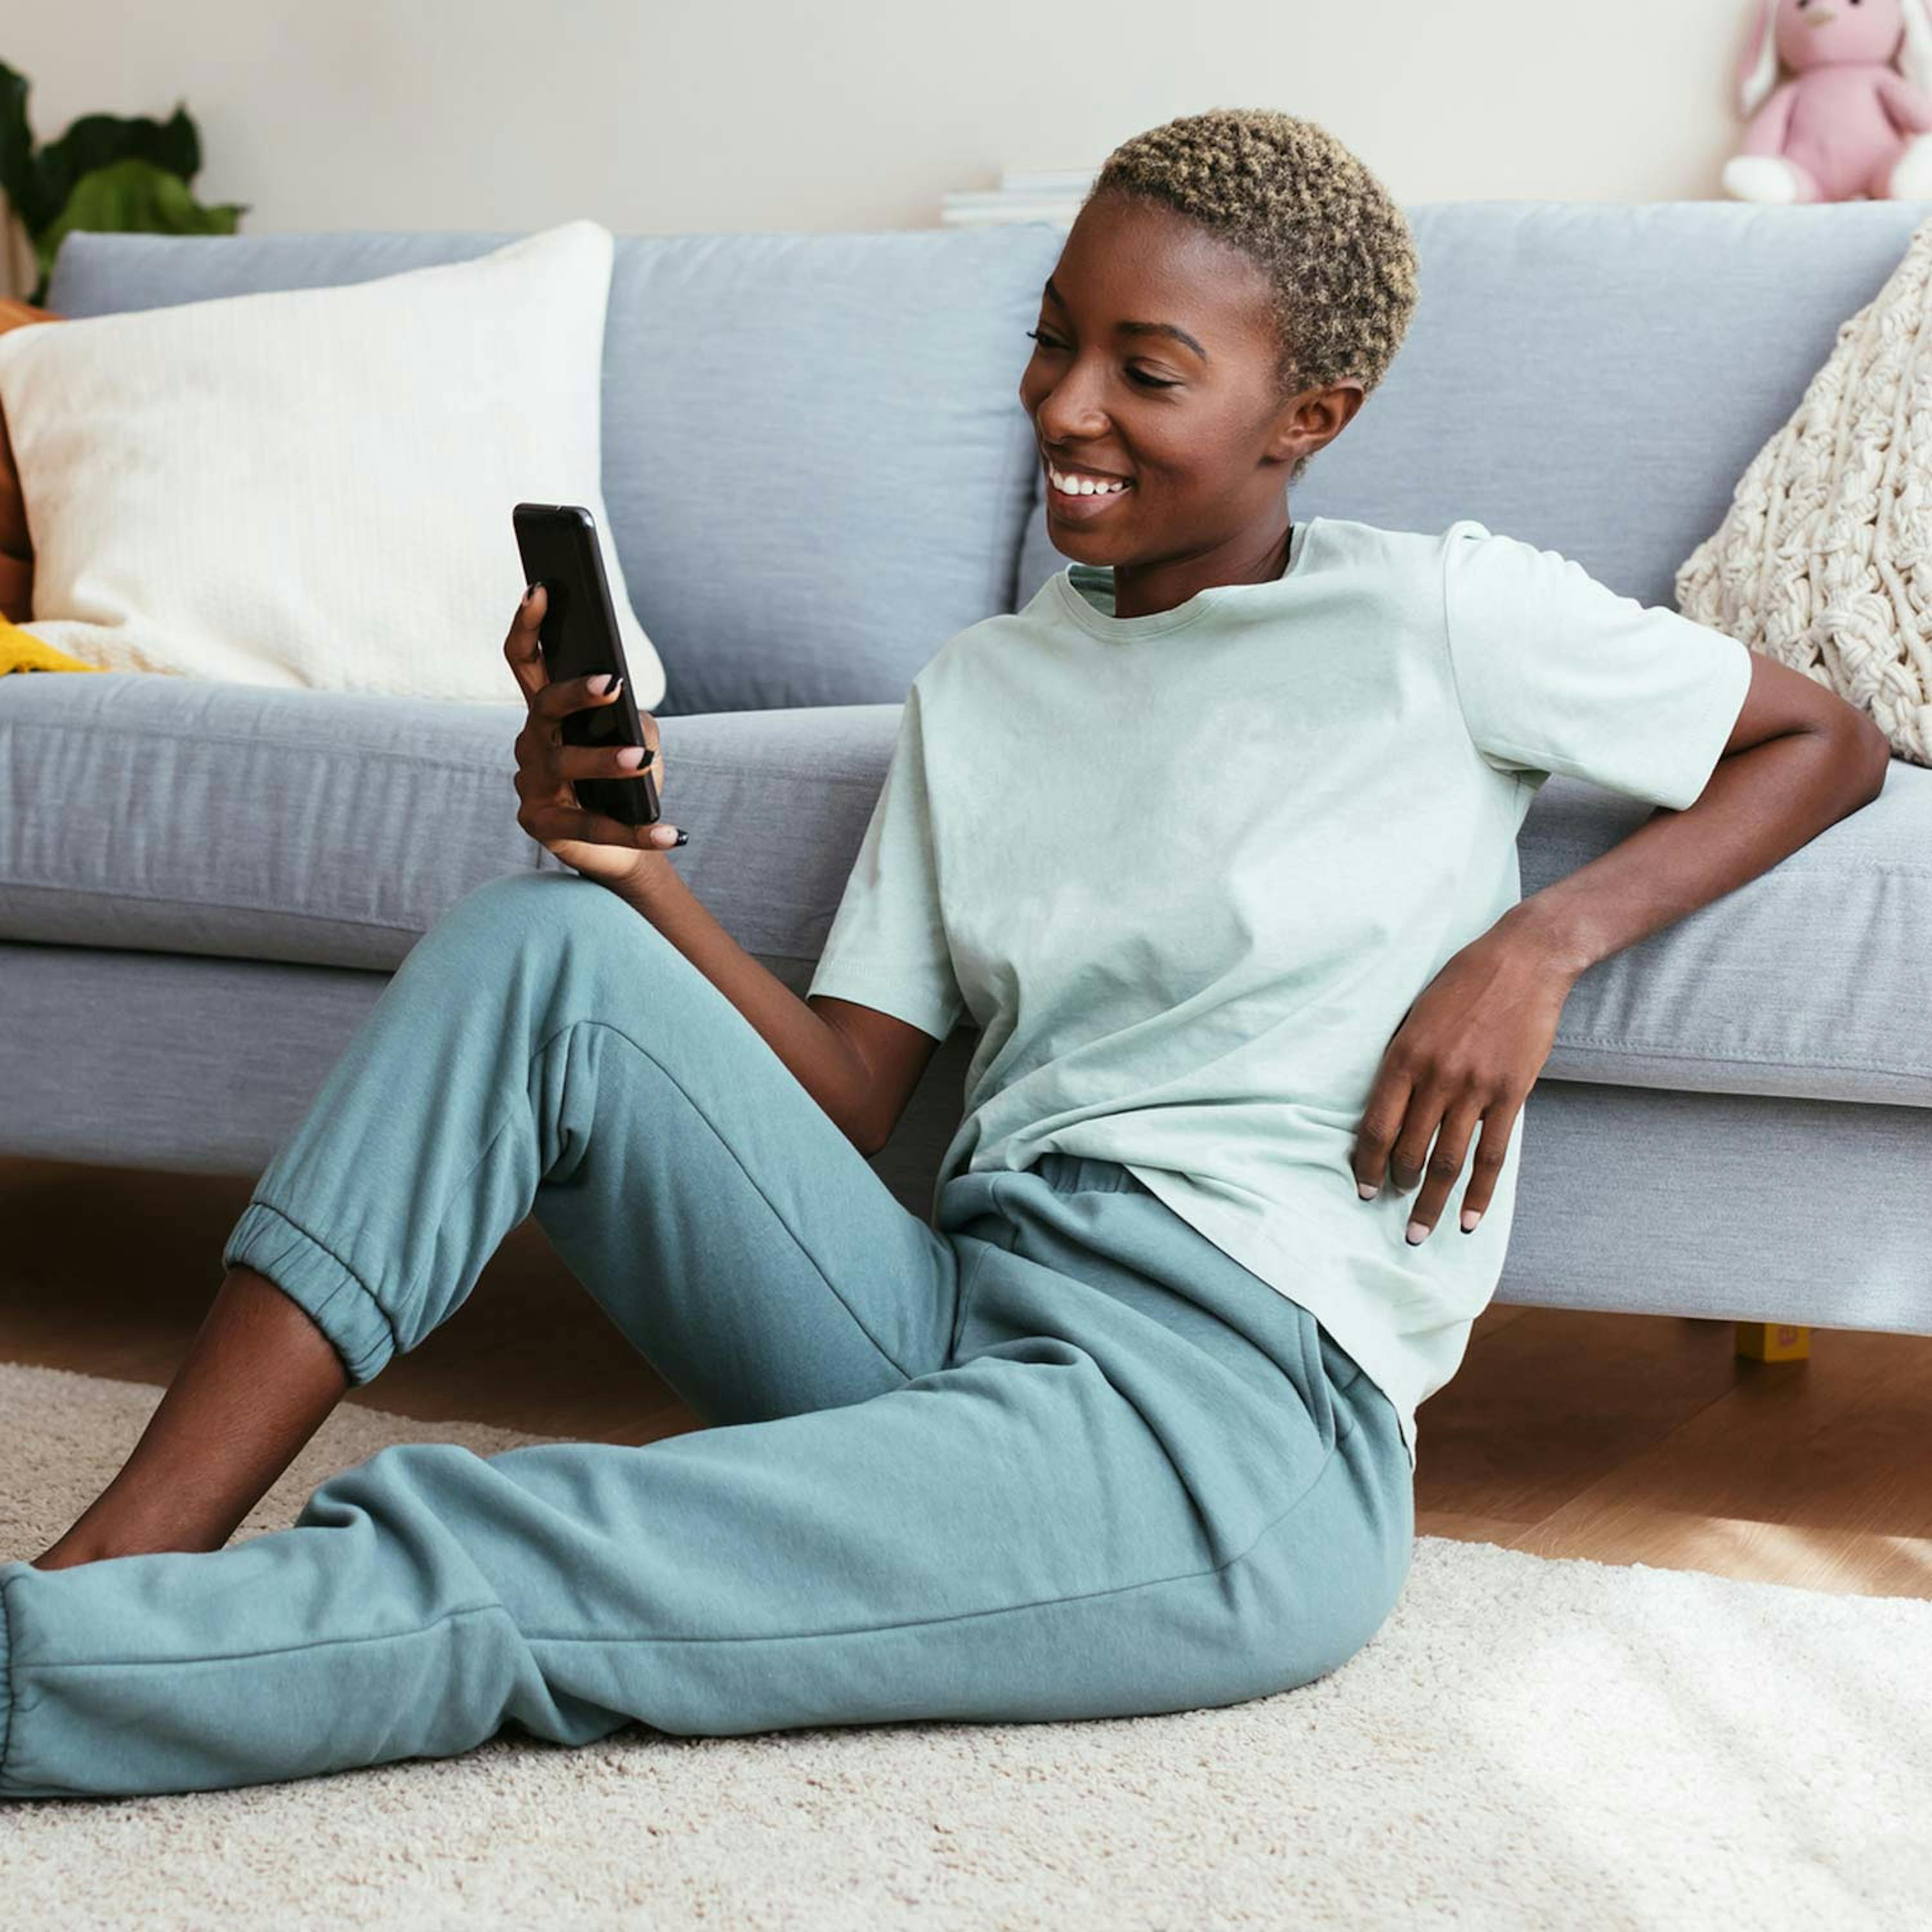 Lächelnde Frau mit Smartphone vor Couch am Boden sitzend 